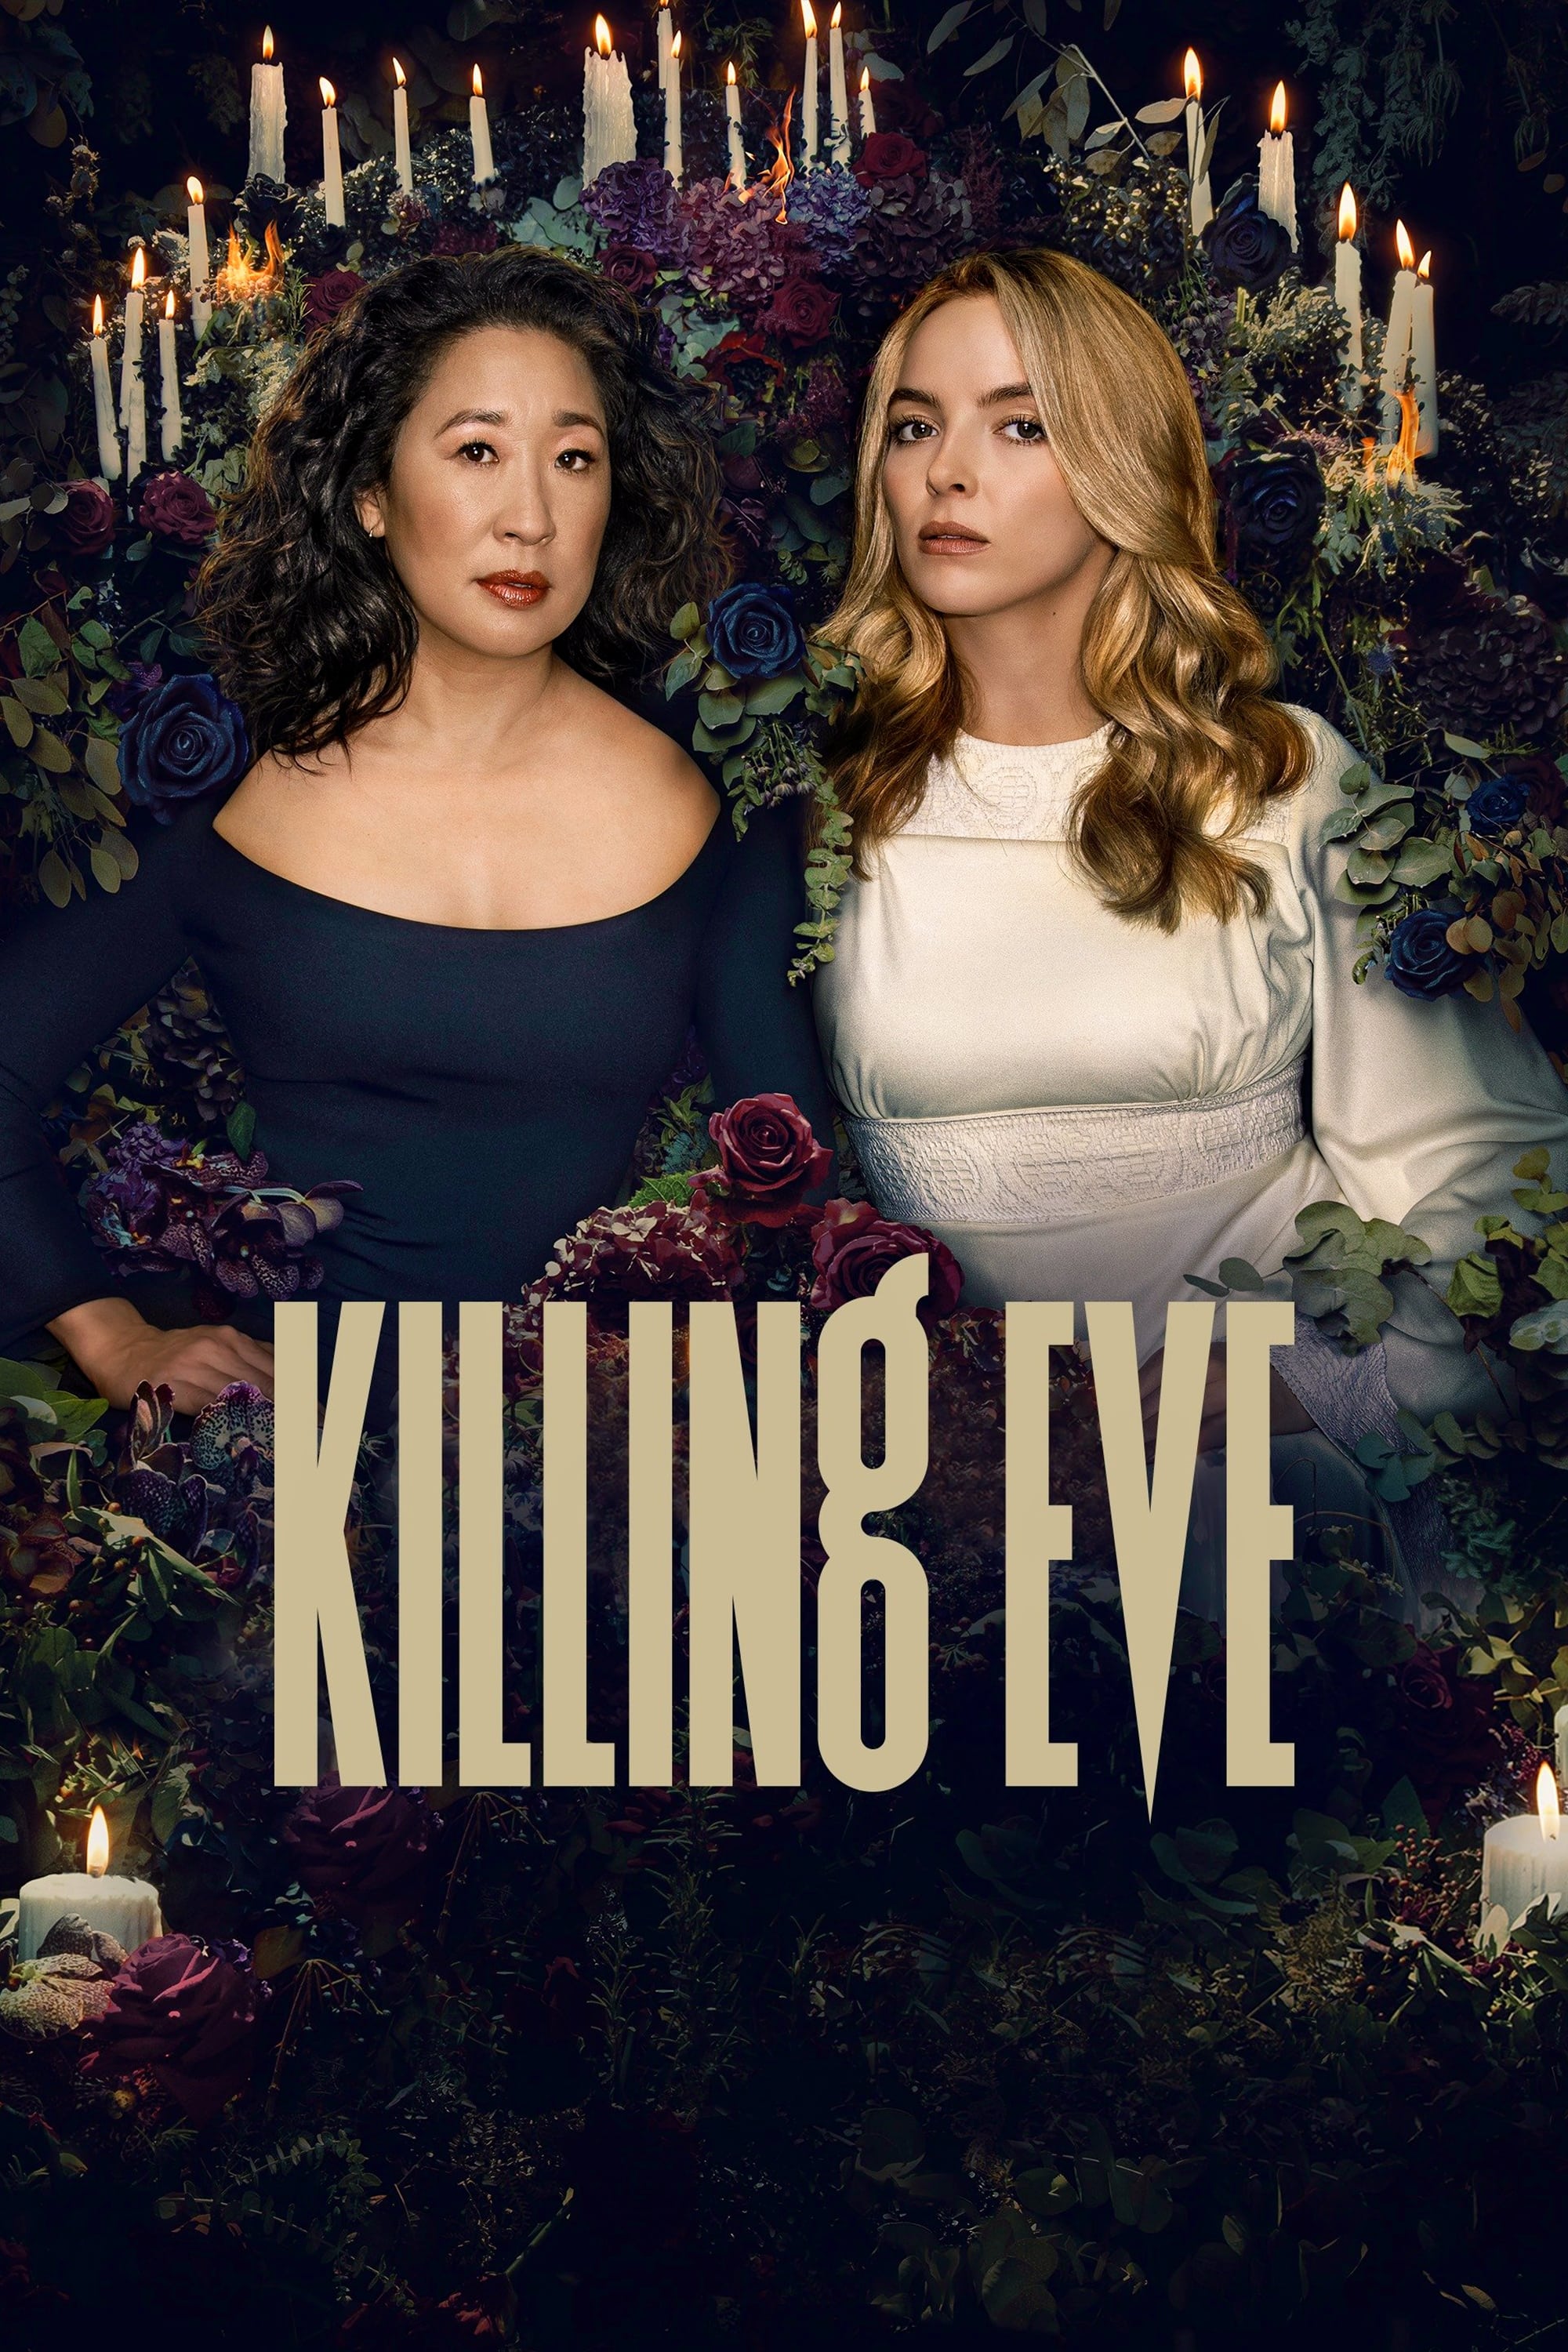 Killing Eve TV Shows About Spy Story